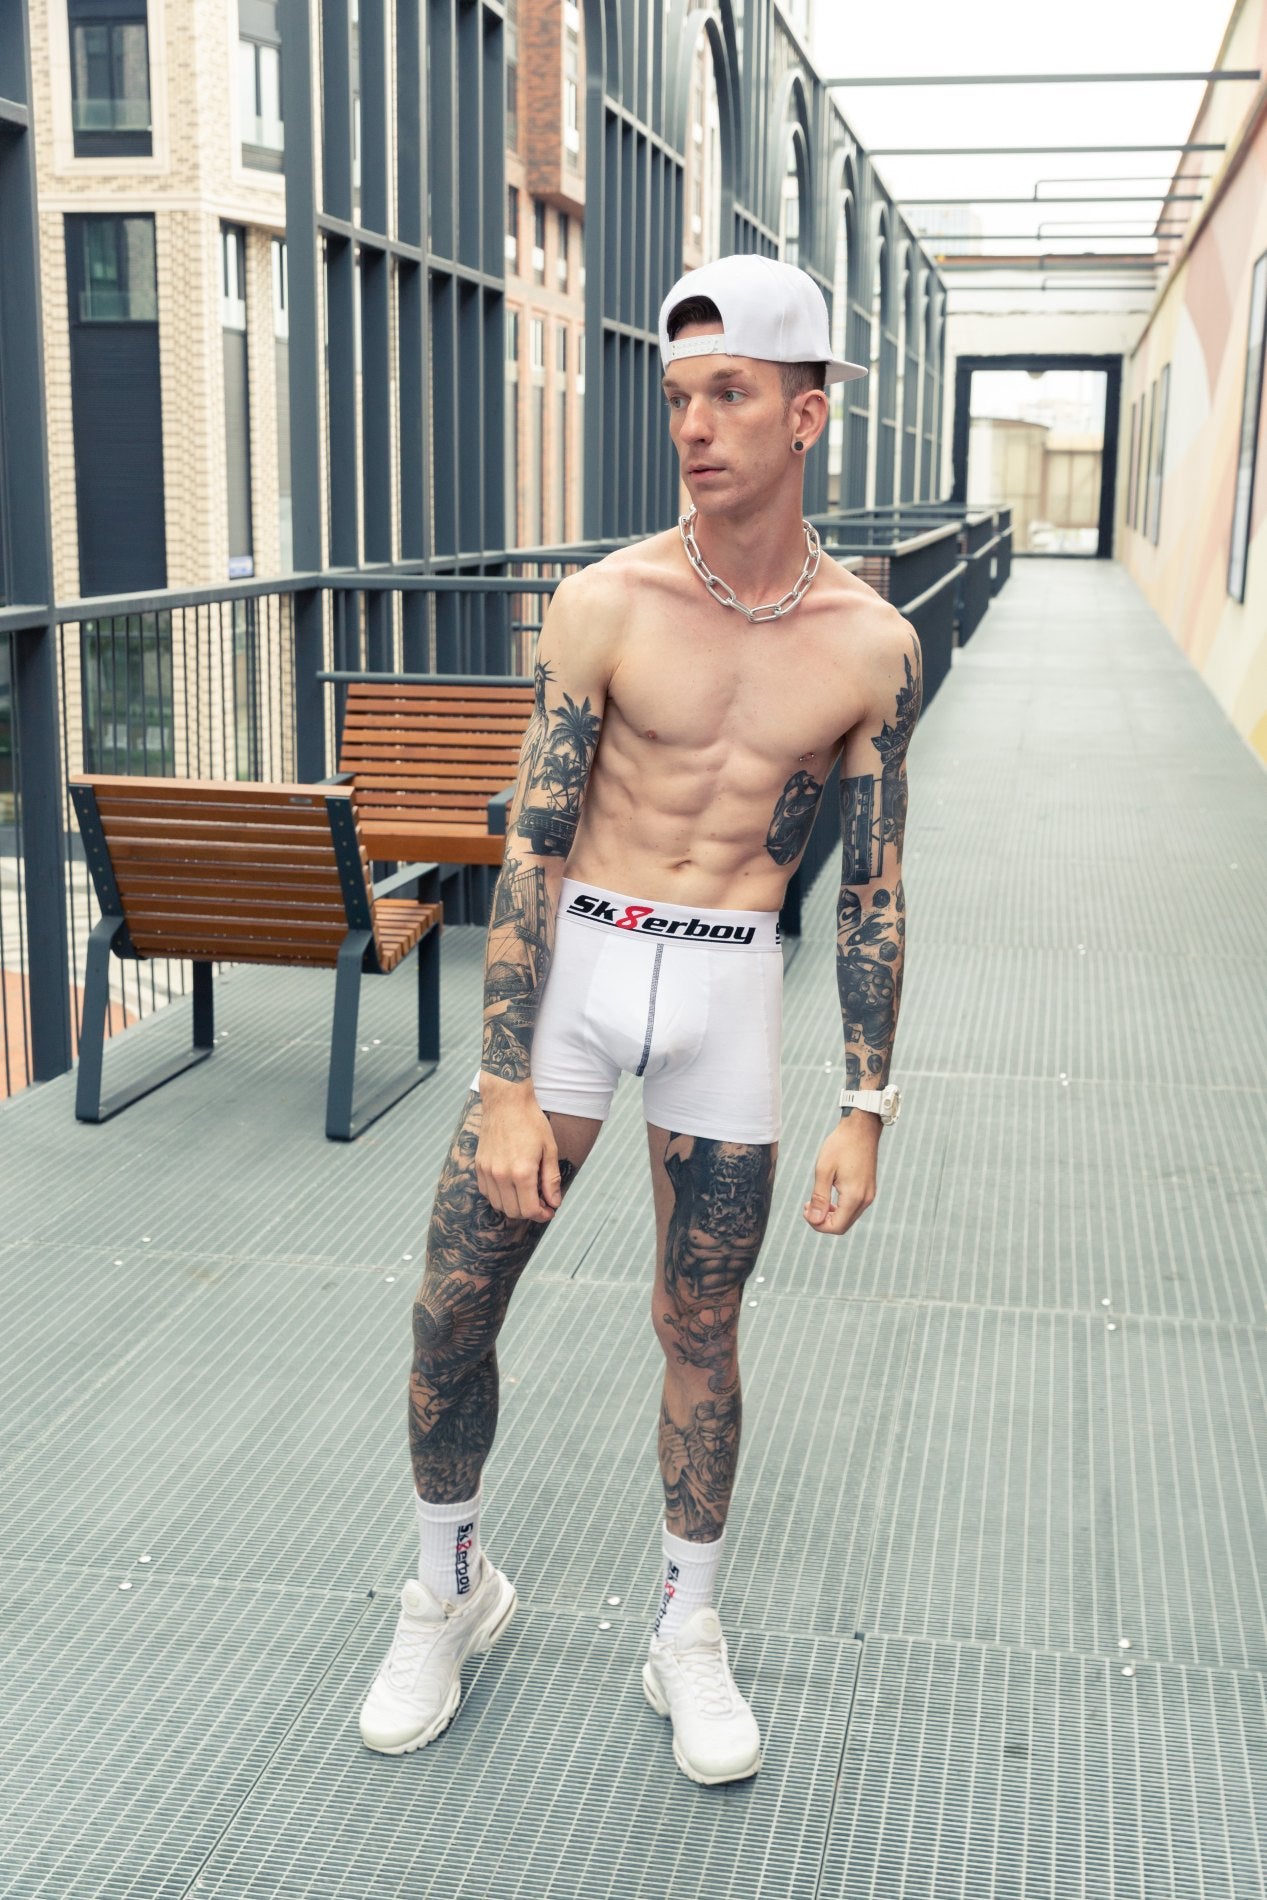 trainierter junge mit freien oberkörper und tattoos auf beinen und armen trägt eine weisse boxershort von sk8erboy mit passenden crew socks in weiss und nike tn sneaker mit kappe und stahlkette um den hals.